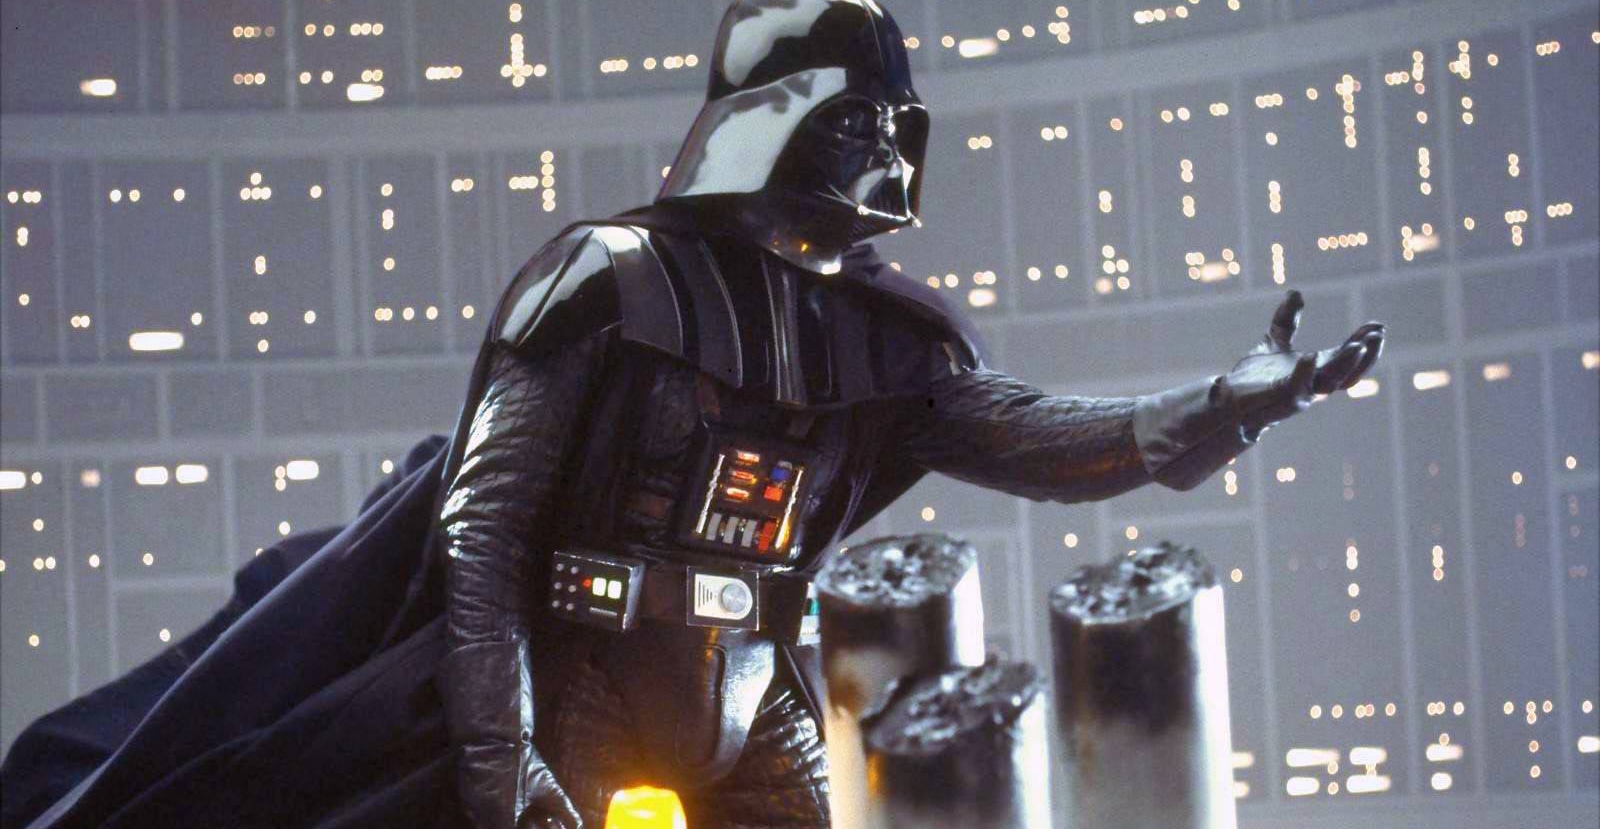 Darth Vader estendendo a mão